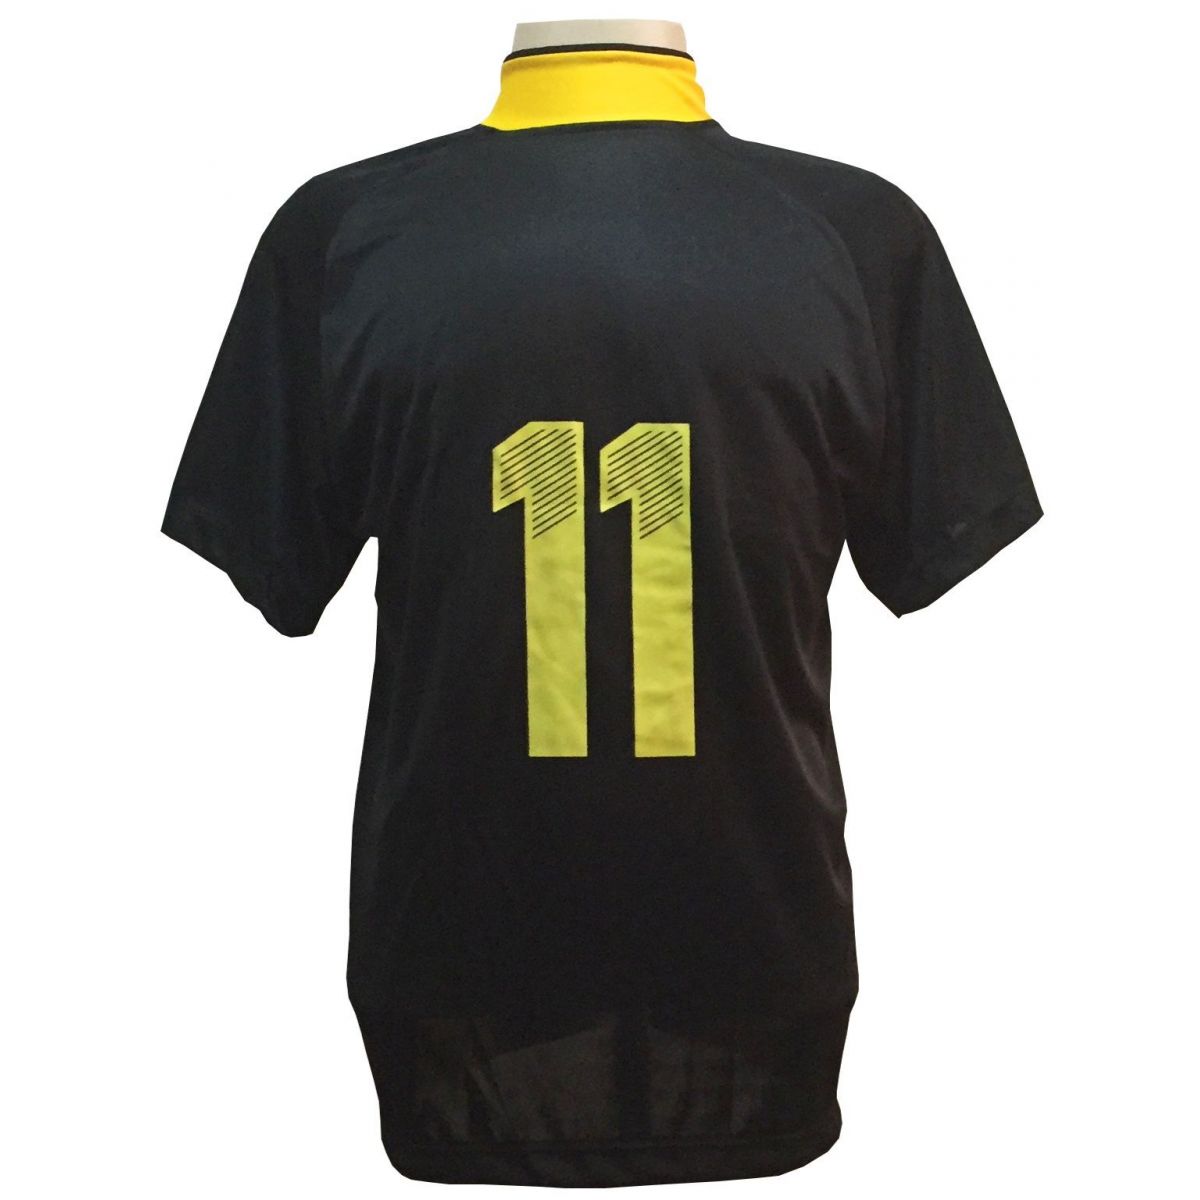 Uniforme Esportivo com 12 camisas modelo Milan Preto/Amarelo + 12 calções modelo Madrid + 1 Goleiro + Brindes